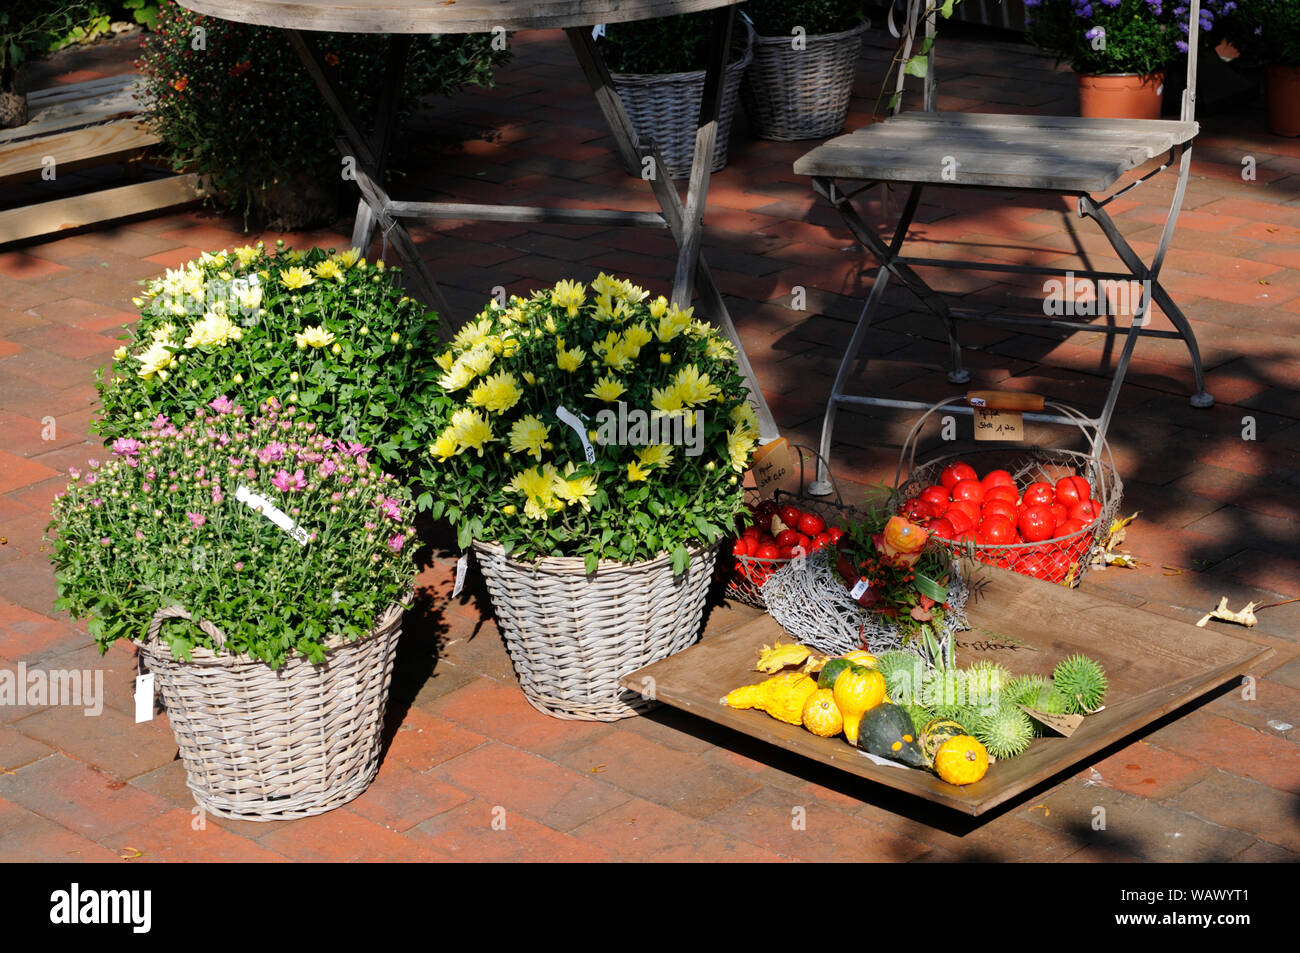 Flower shop offers an assortment of autumn plants. Stock Photo